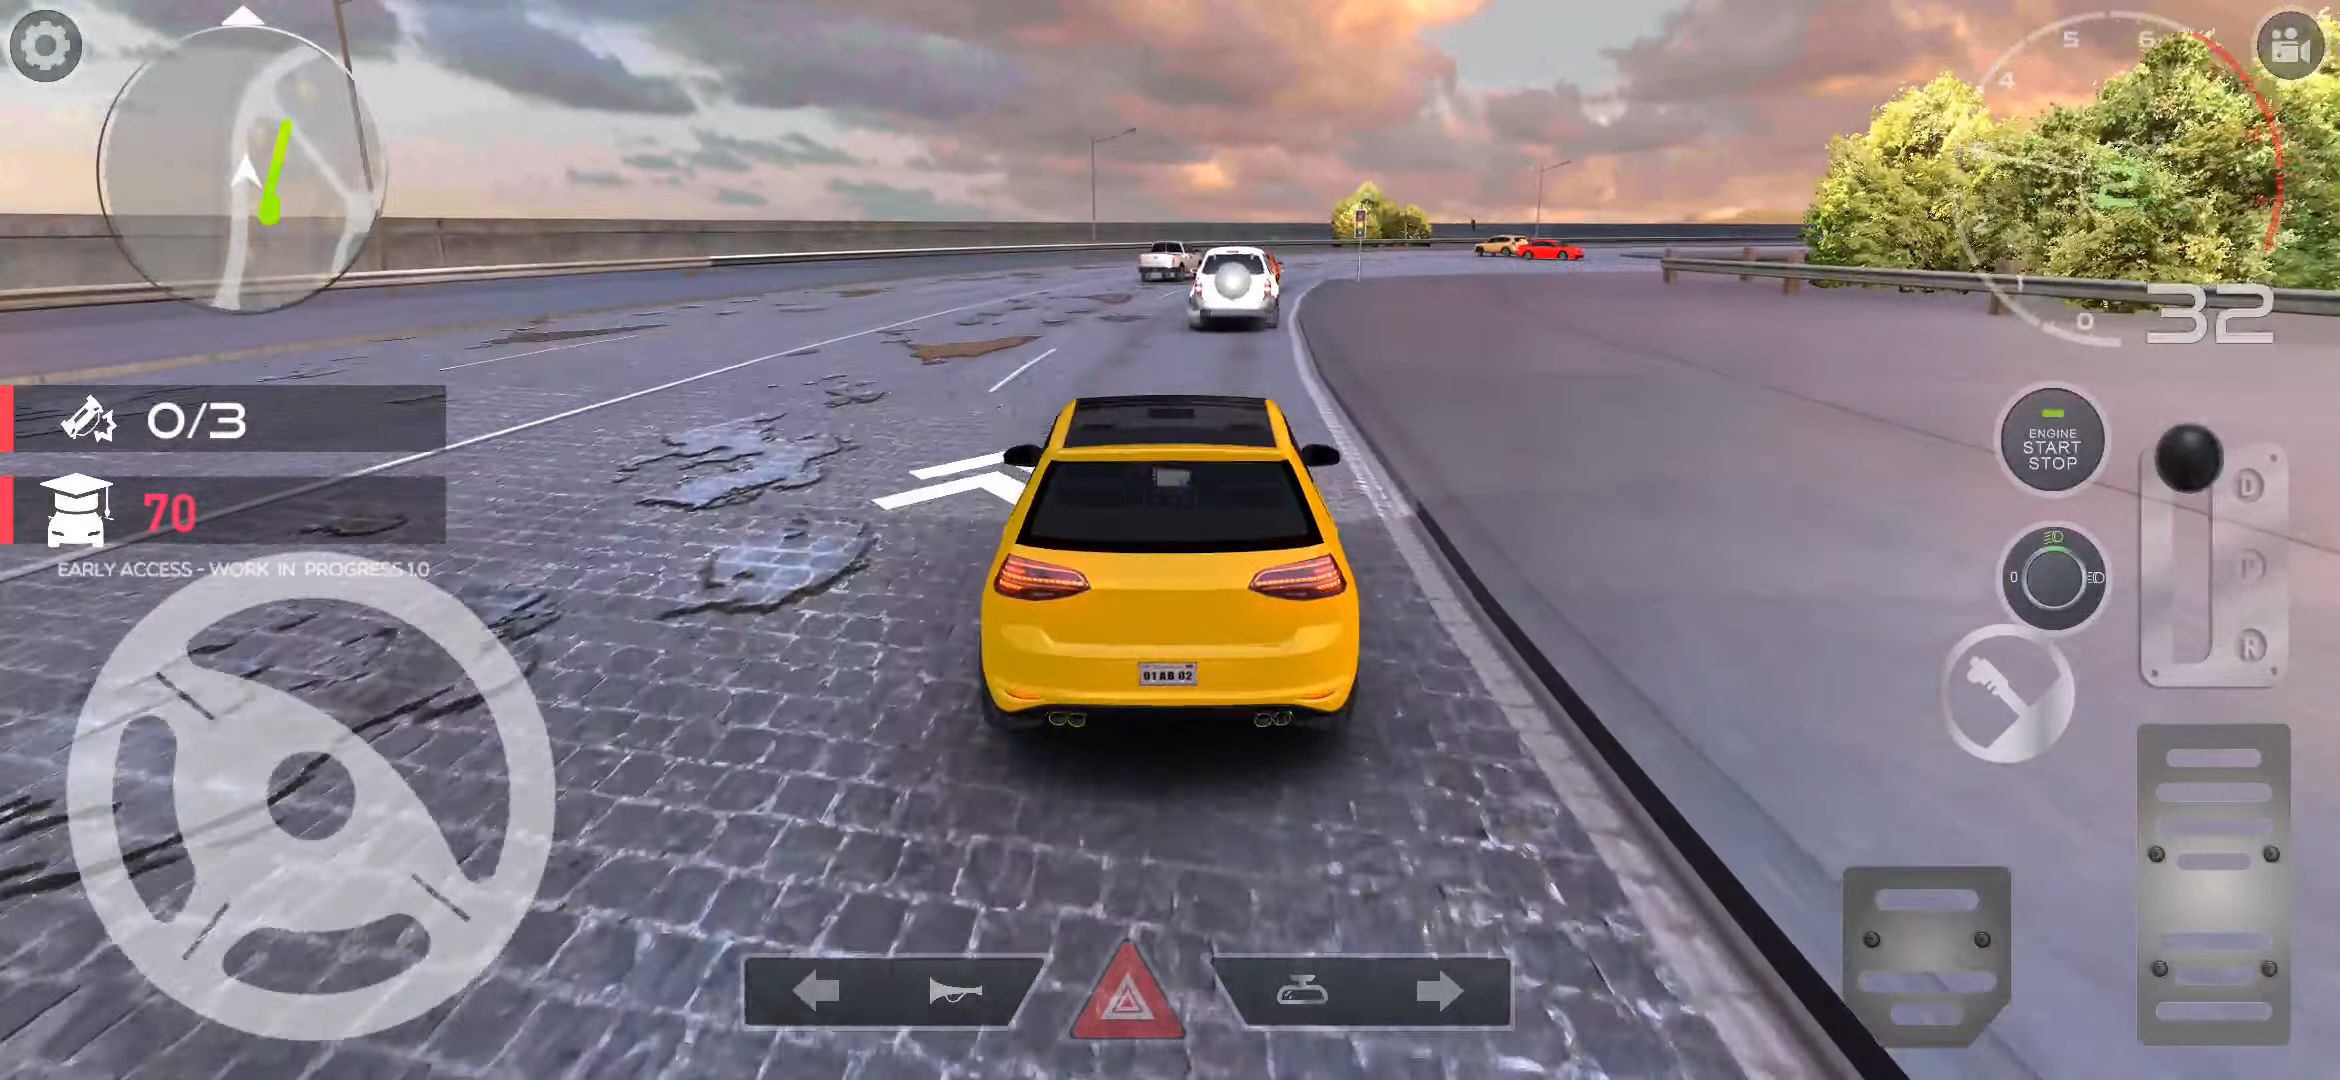 PetrolHead : Traffic Quests - Joyful City Driving screenshot 1